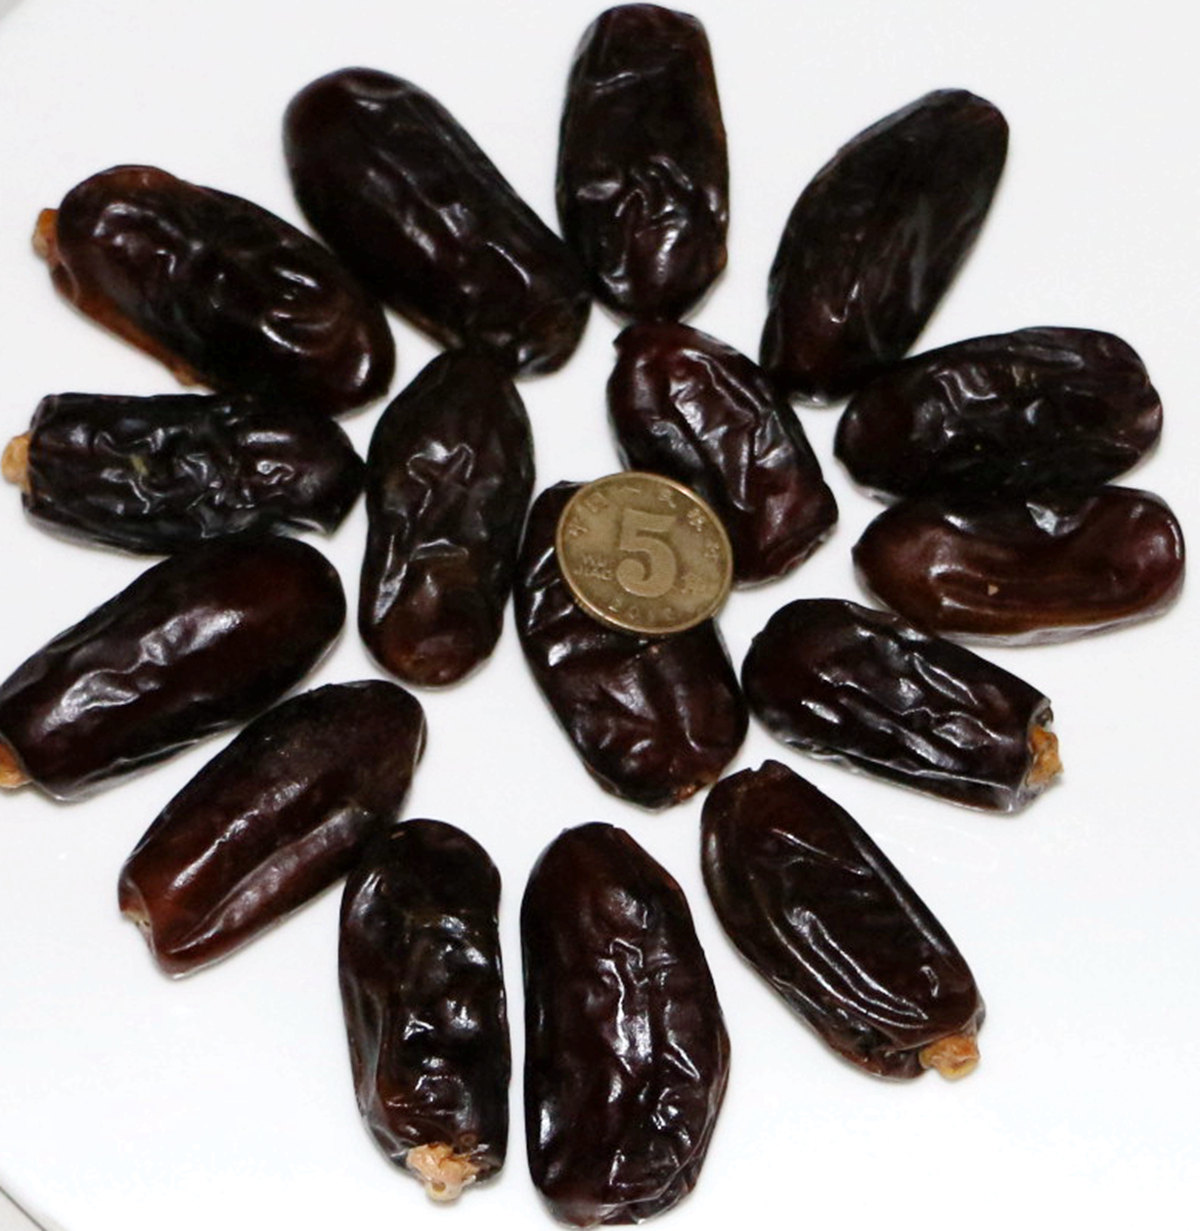 [到家尝]阿联酋迪拜进口特级黑椰枣500克超甜不腻包邮进口枣